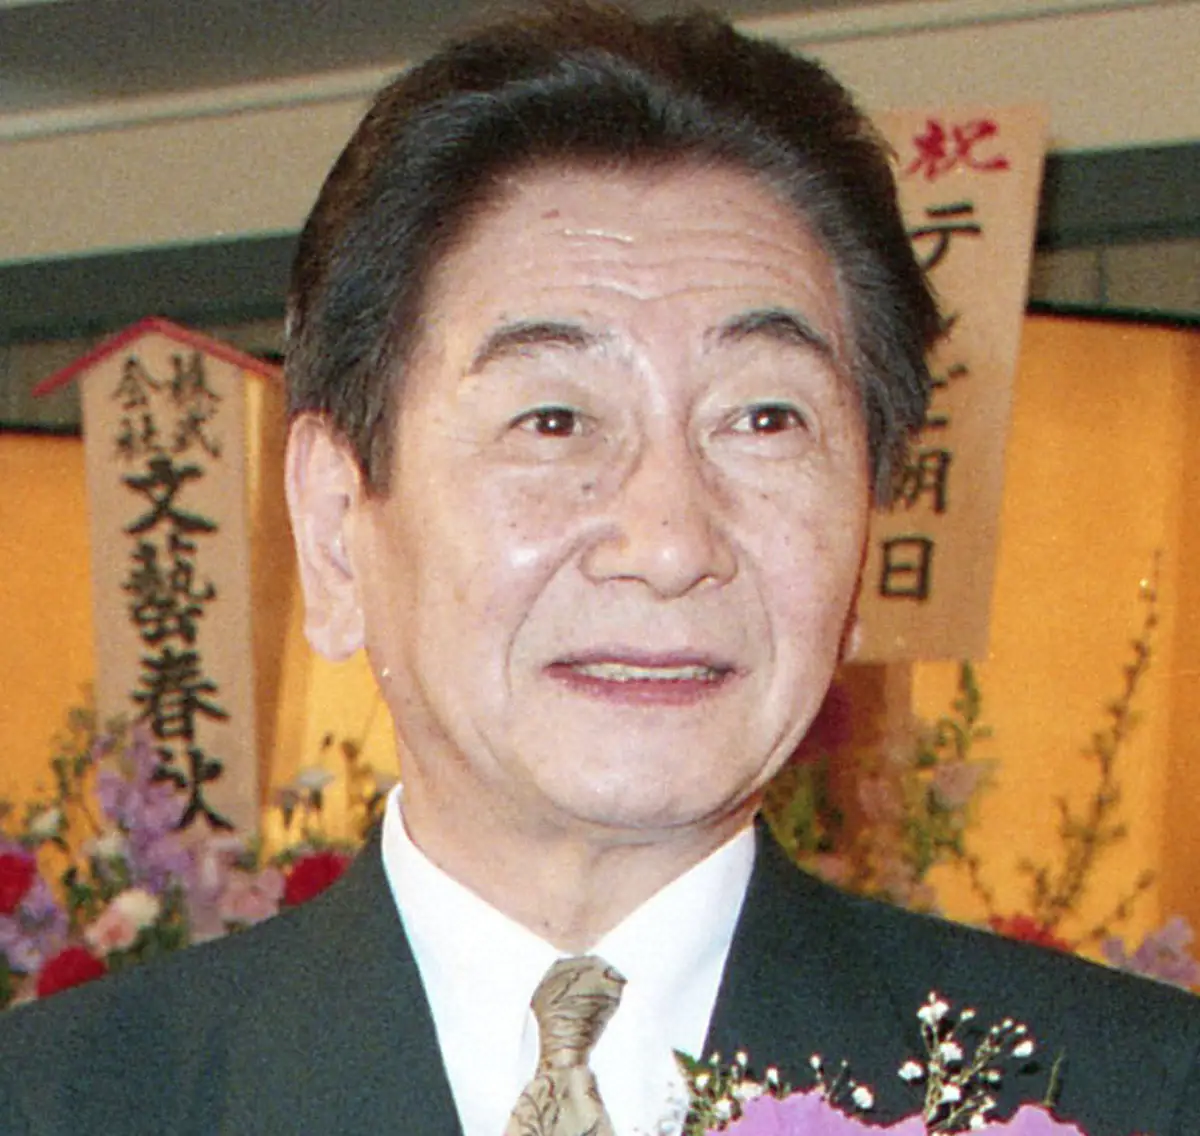 「トゥナイト」司会の作家・利根川裕さん死去、96歳　「糸魚川心中」「B少年の弁明」では直木賞候補に